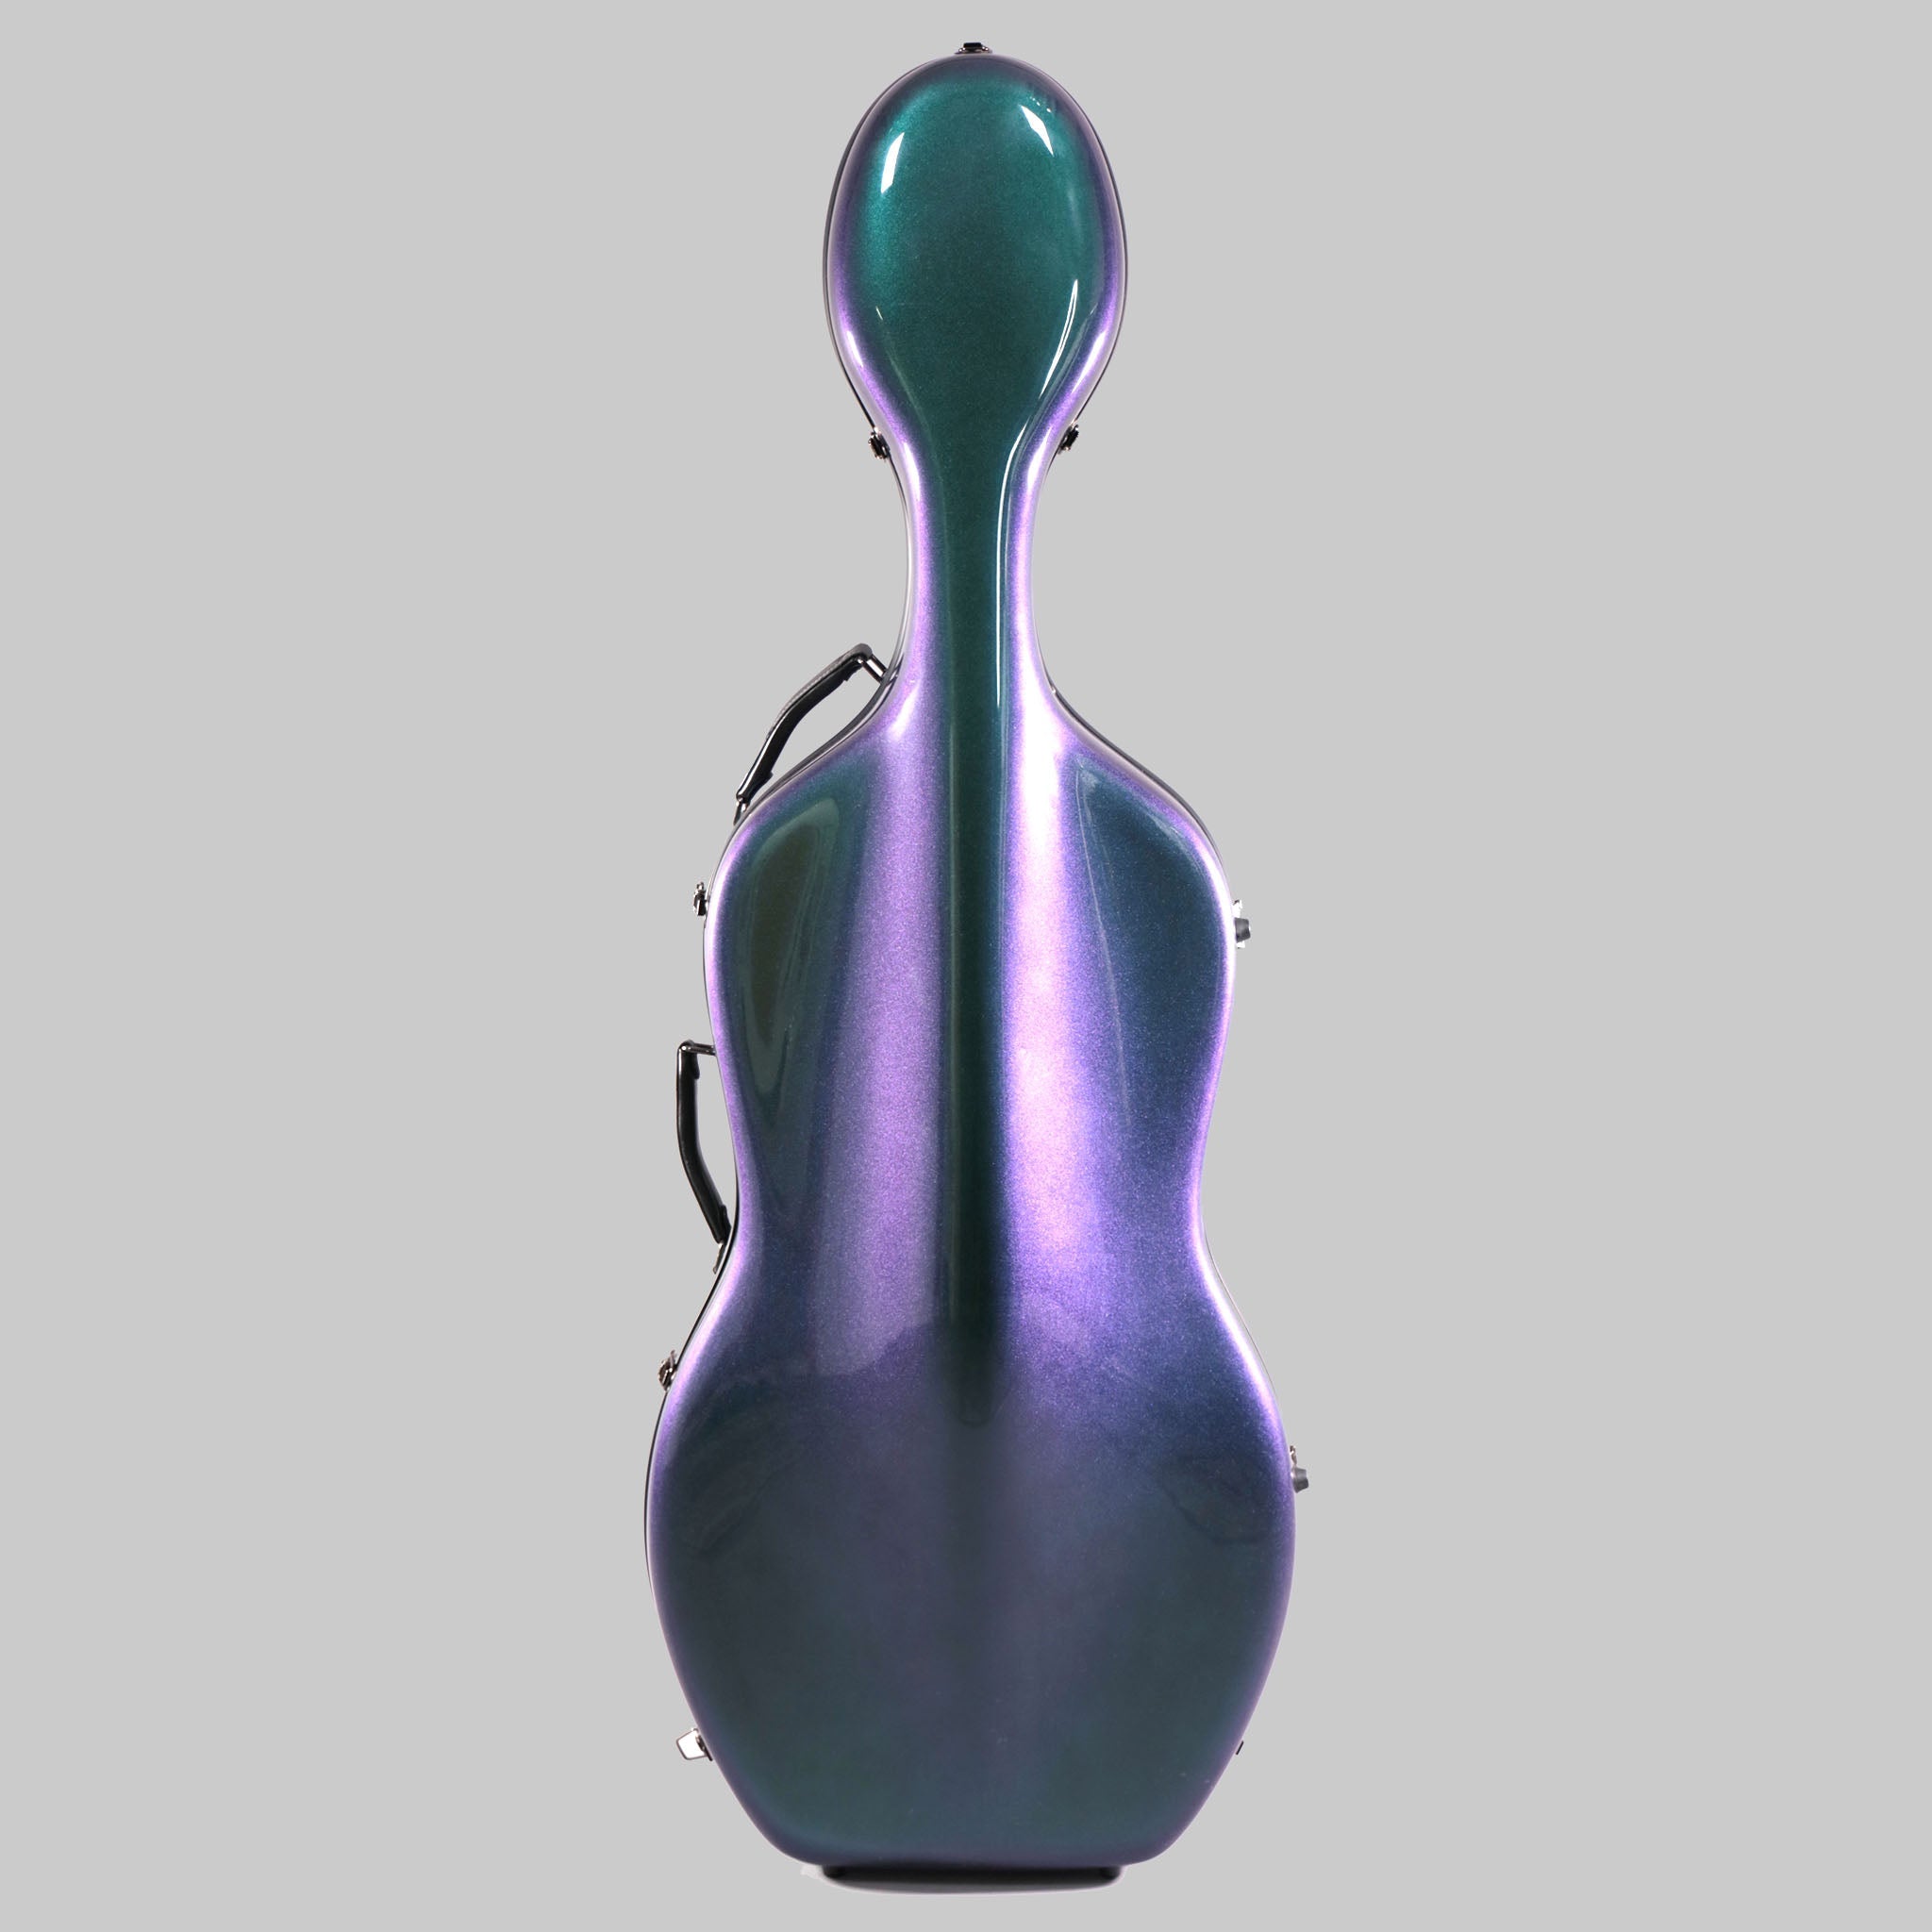 B-Stock Fiddlerman Chameleon Cello Case